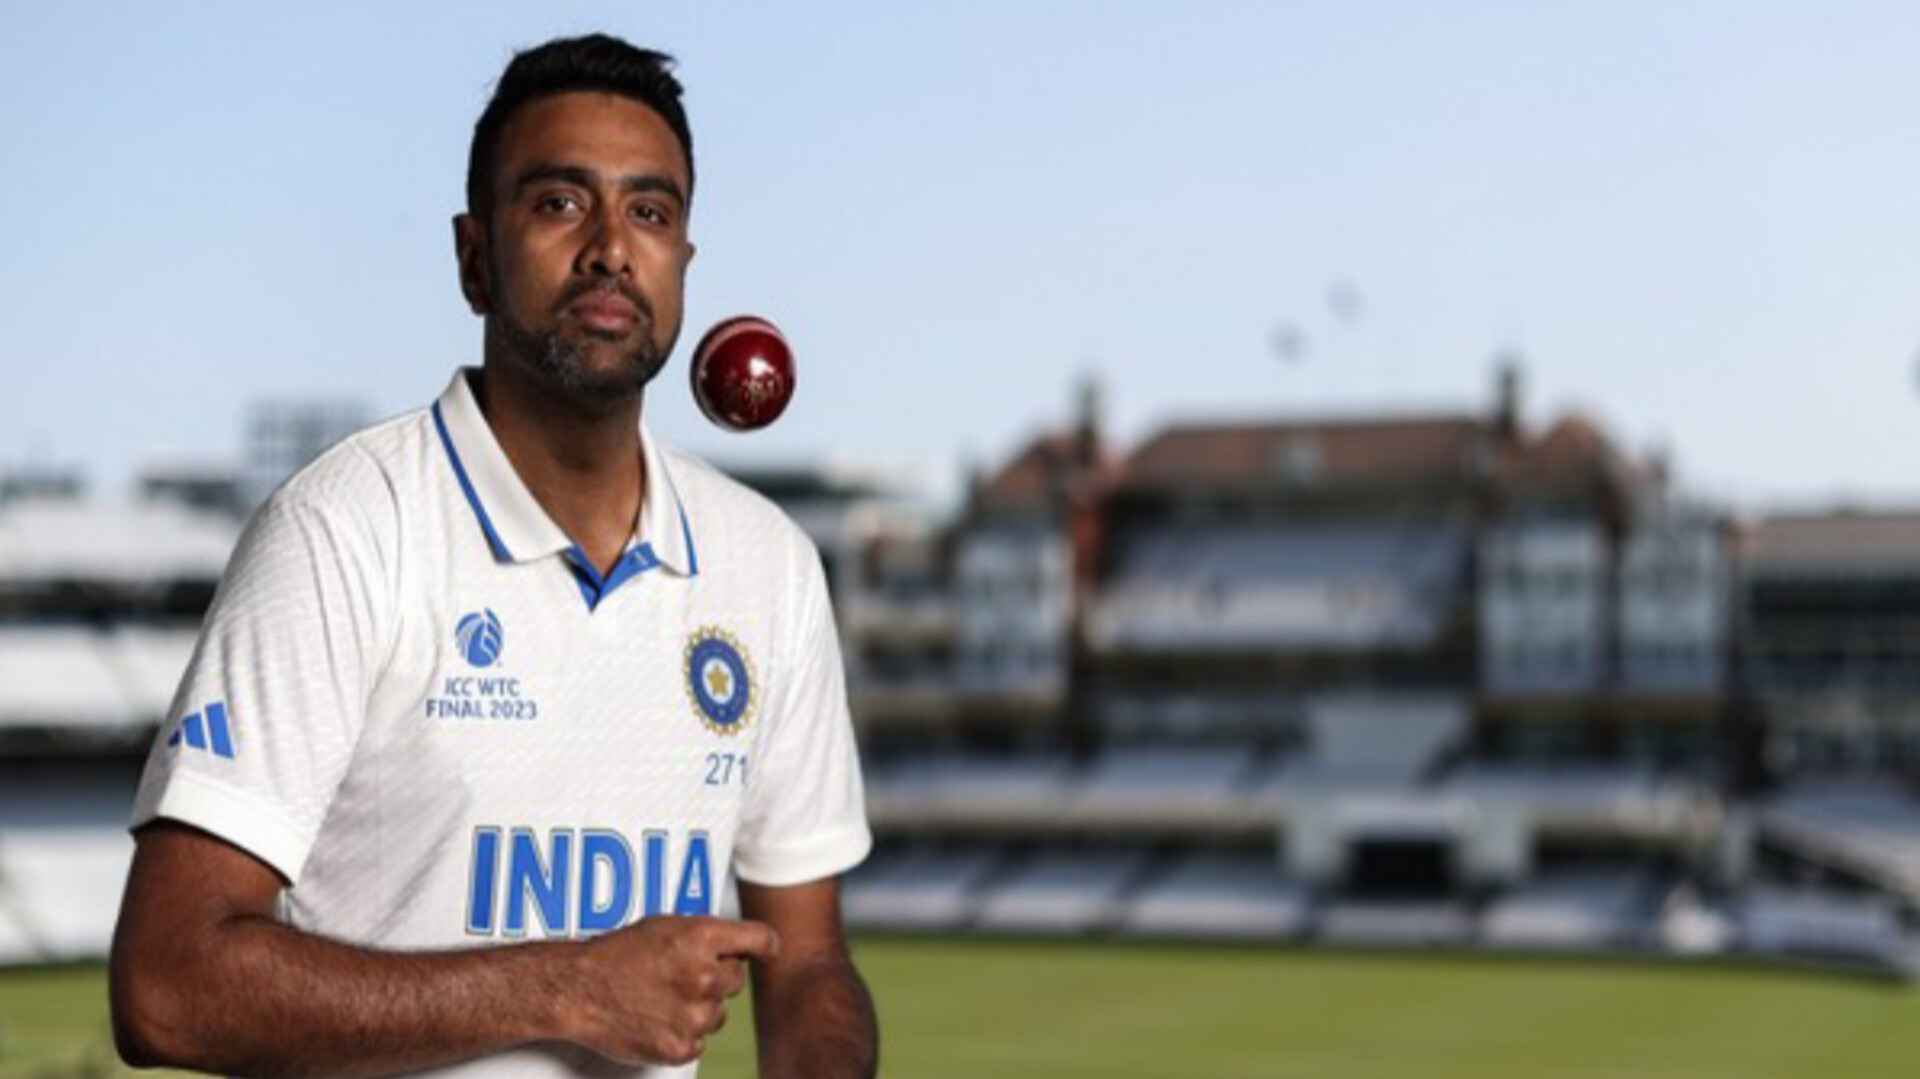 अश्विन राजकोट टेस्ट के शेष समय के लिए भारतीय टीम से जुड़ेंगे: बीसीसीआई